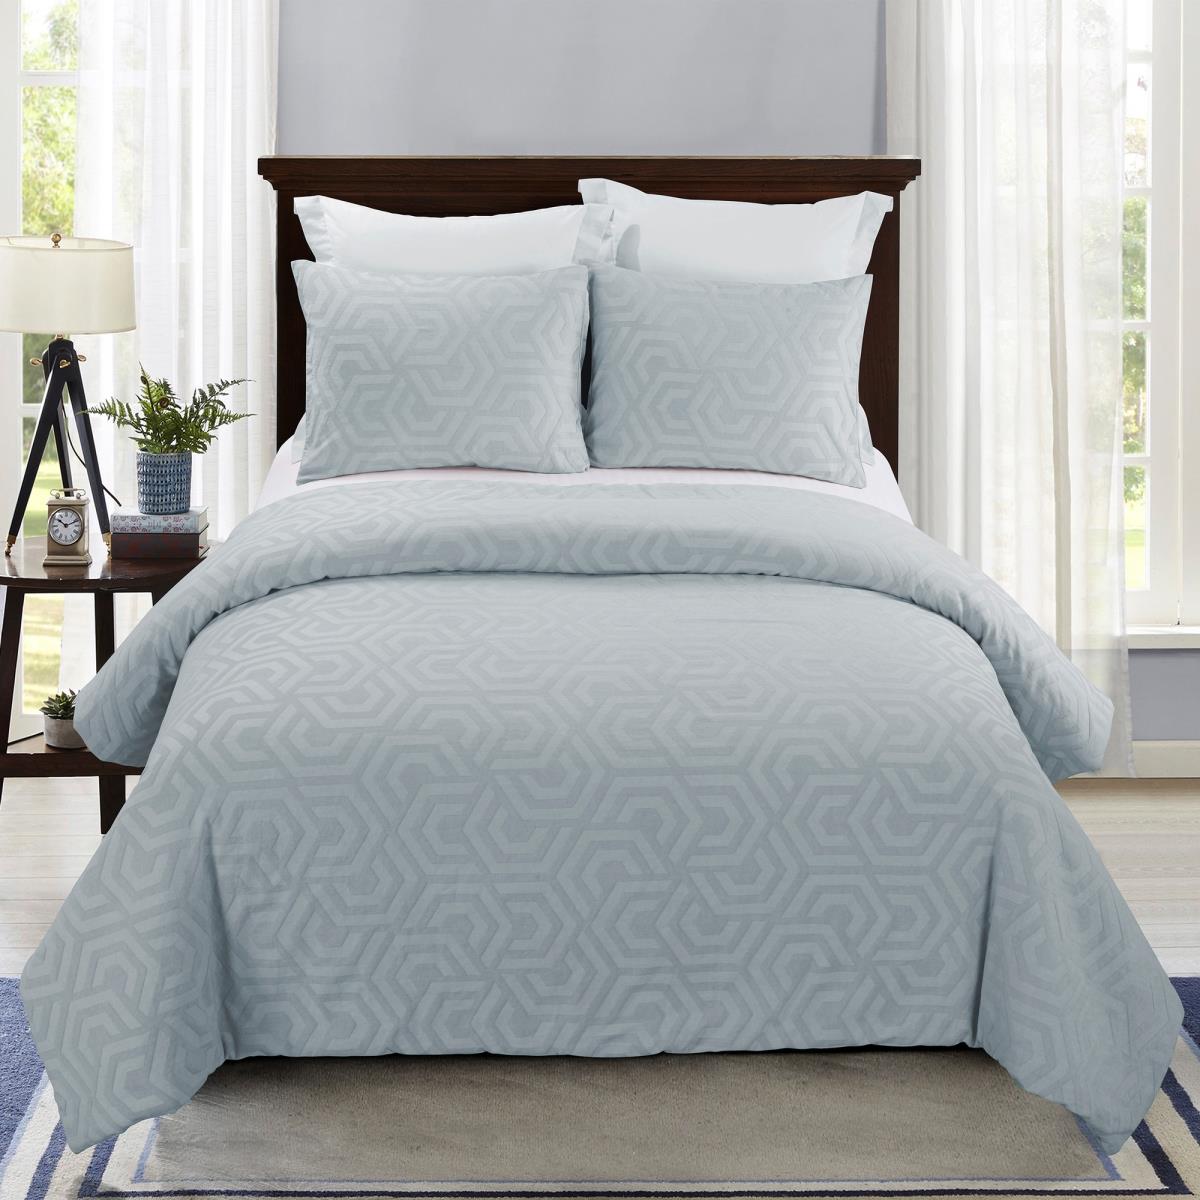 Y00717 King Size Comforter Set - Seville Sofe Blue